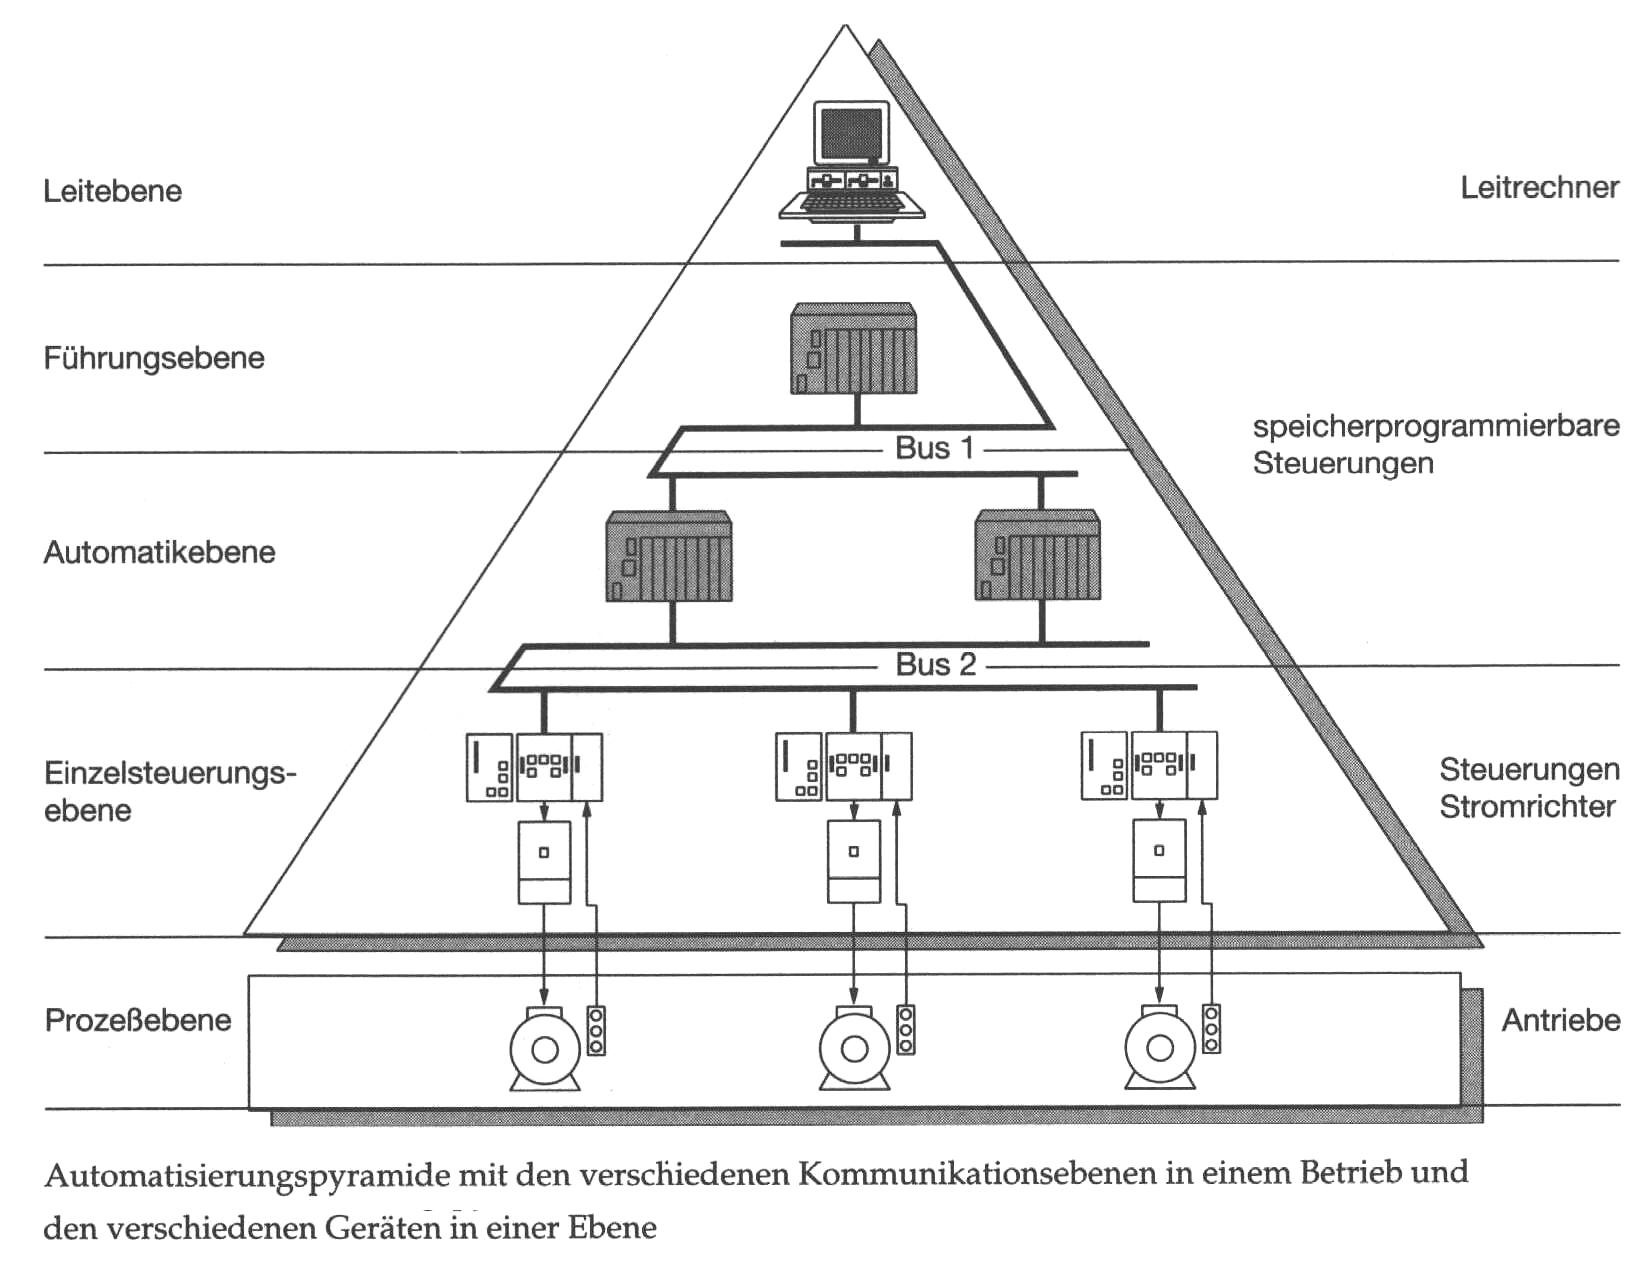 Automatisierungspyramide